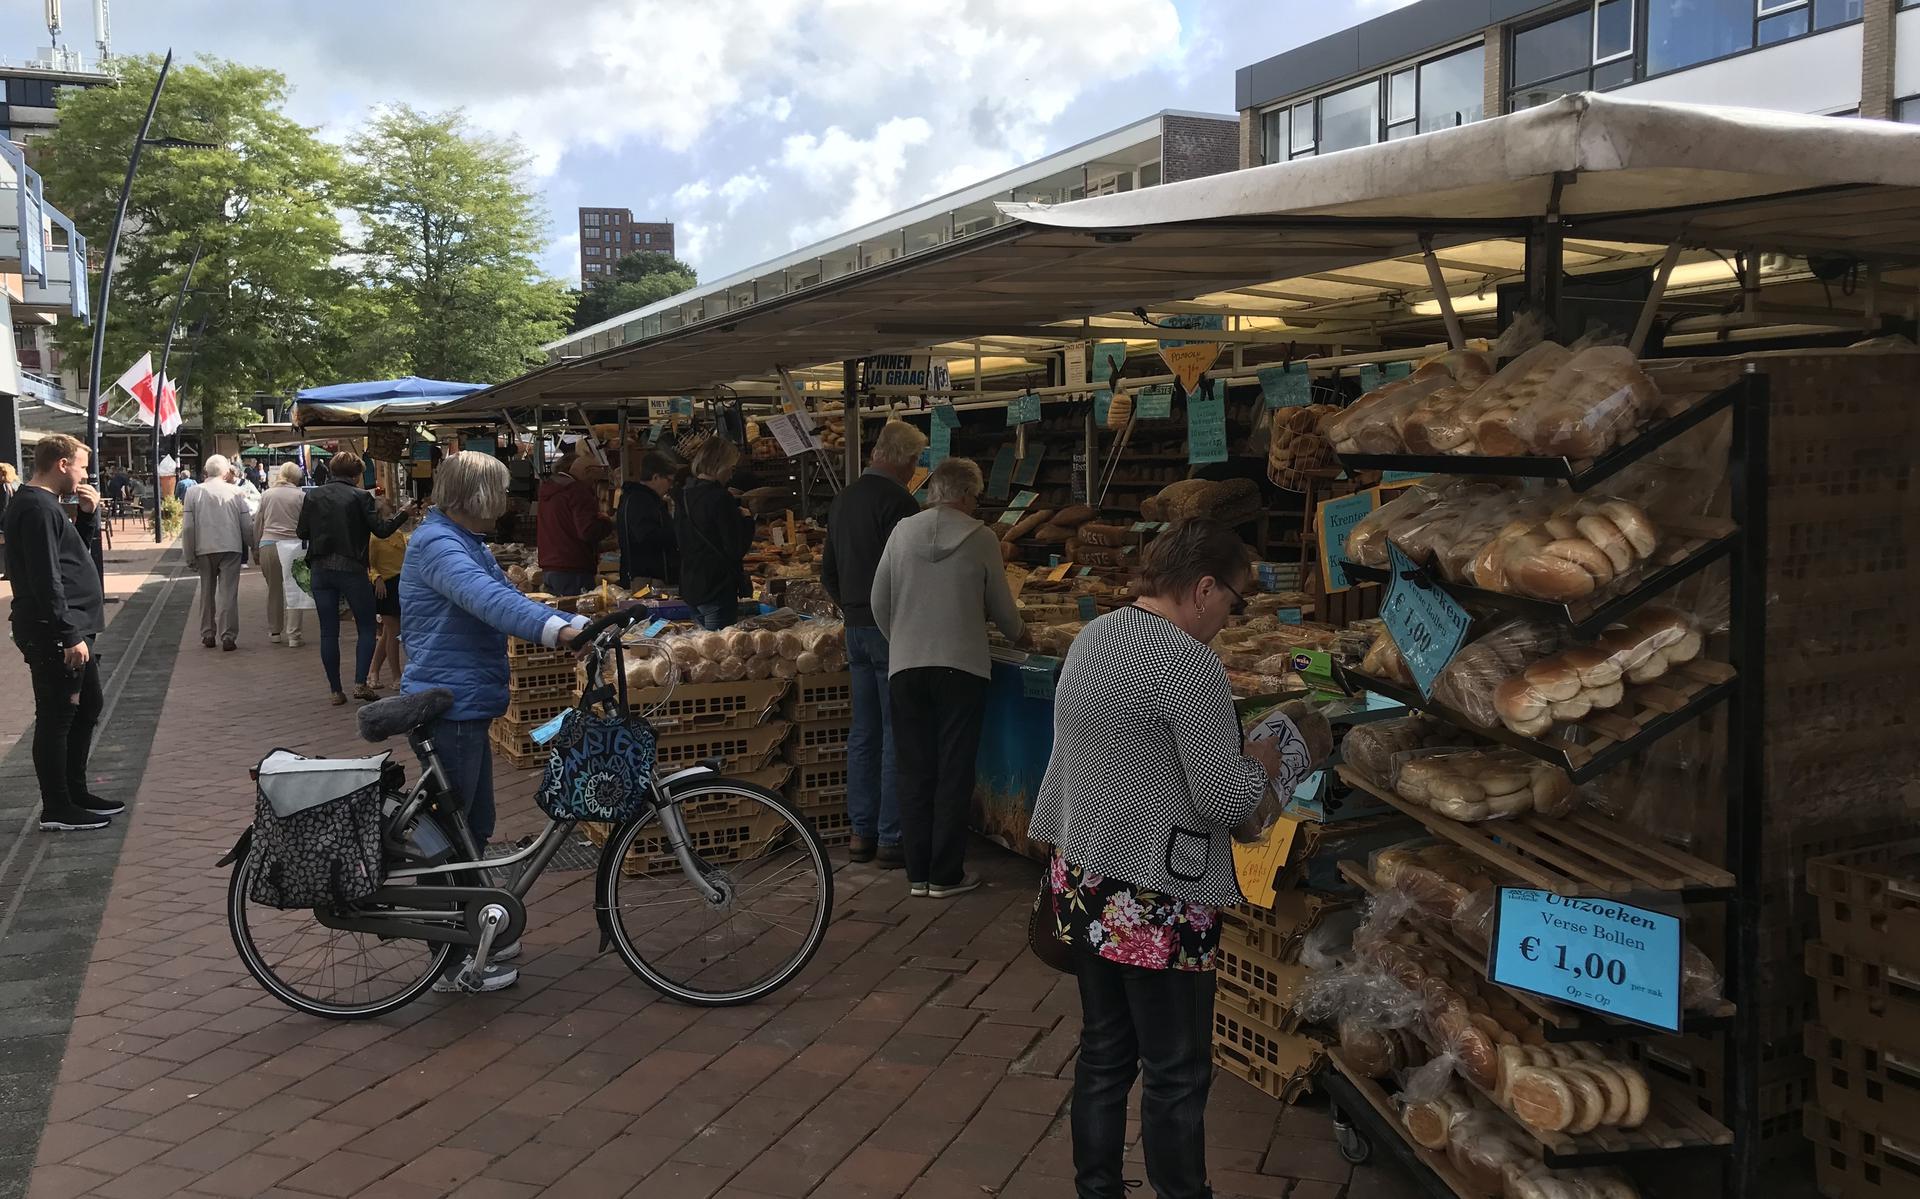 De weekmarkt in Stadskanaal bestaat deze maand 70 jaar. Op de foto de kraam van Bakker Hofstede uit Dalfsen. Deze bakkerij staat al 60 jaar op de markt in Stadskanaal.